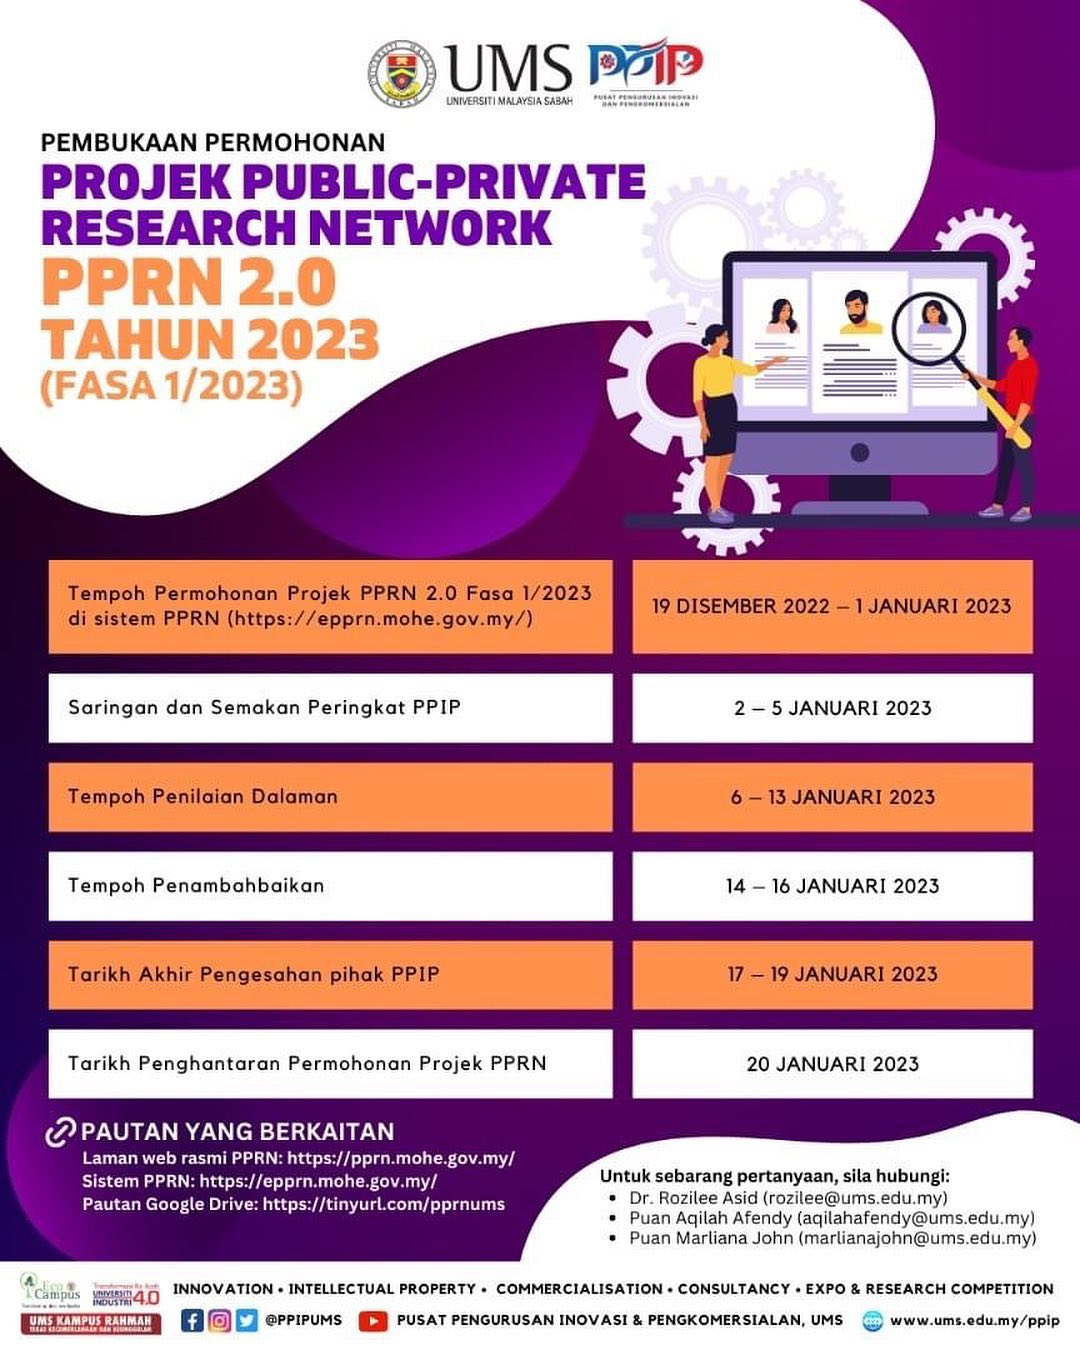 PEMBUKAAN PERMOHONAN PROJEK PUBLIC-PRIVATE RESEARCH NETWORK (PPRN 2.0) TAHUN 2023 - Fasa 1/2023